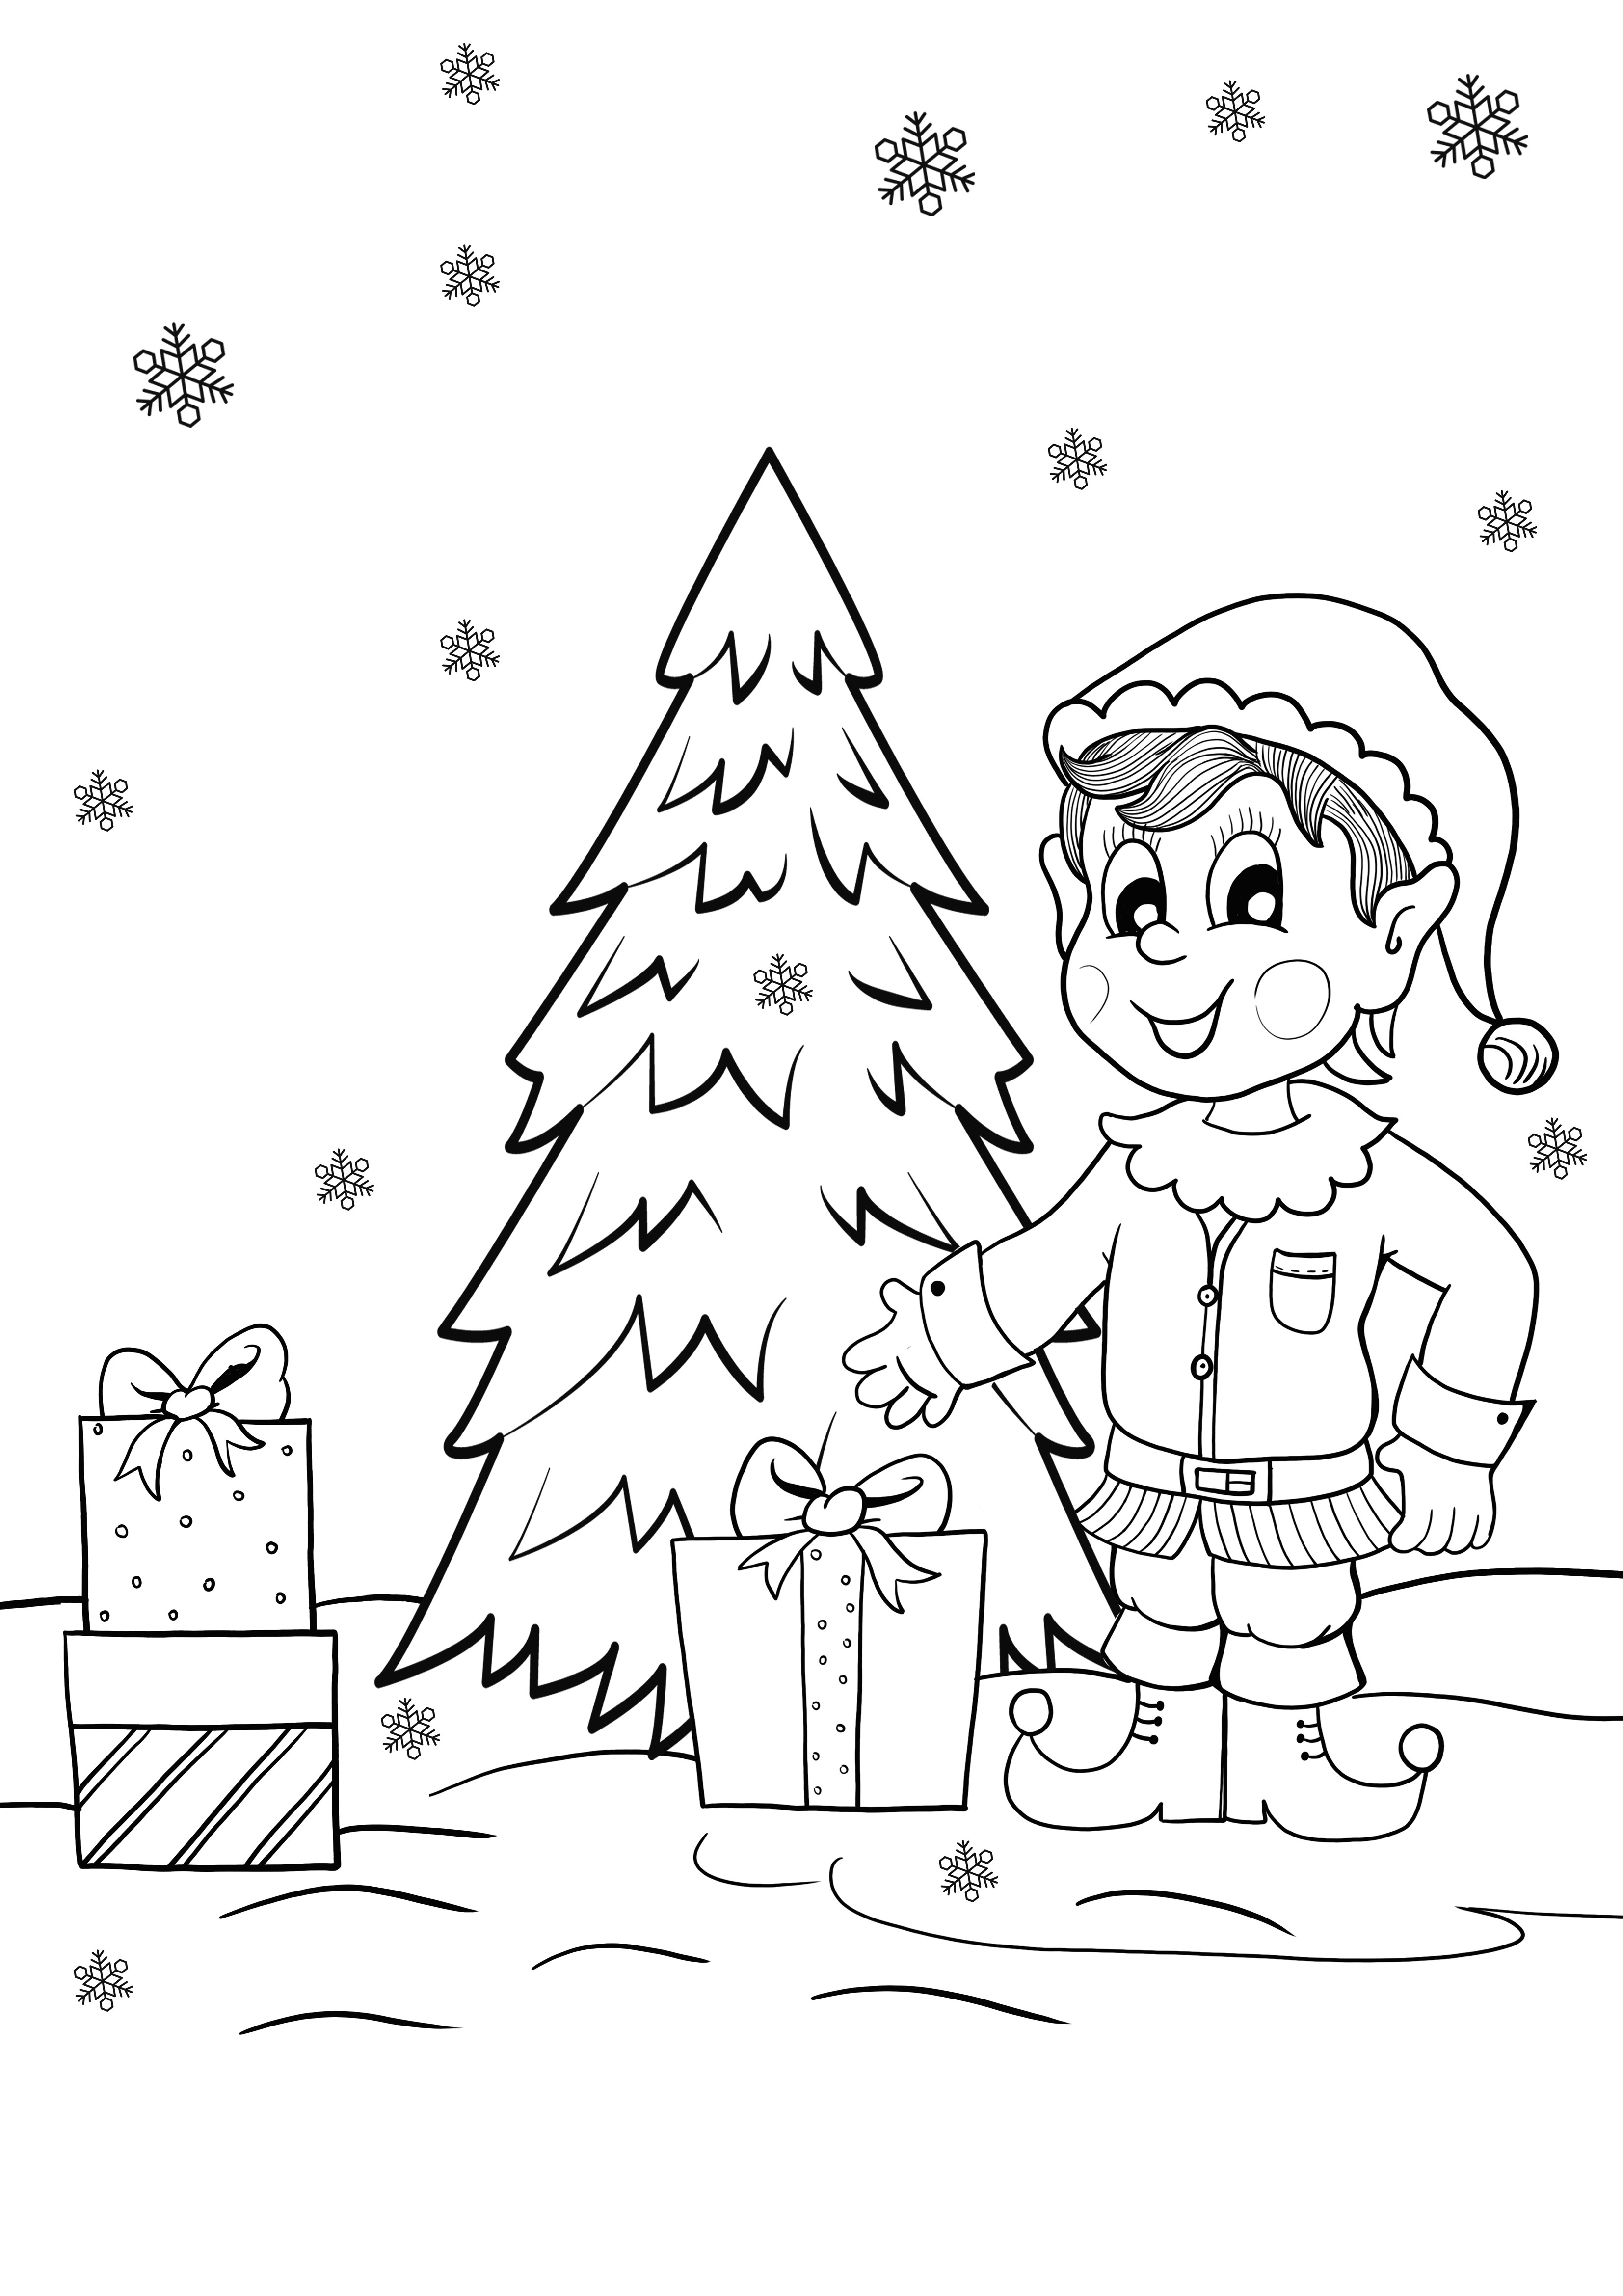 Dibujo de elfo y regalos de Navidad para colorear